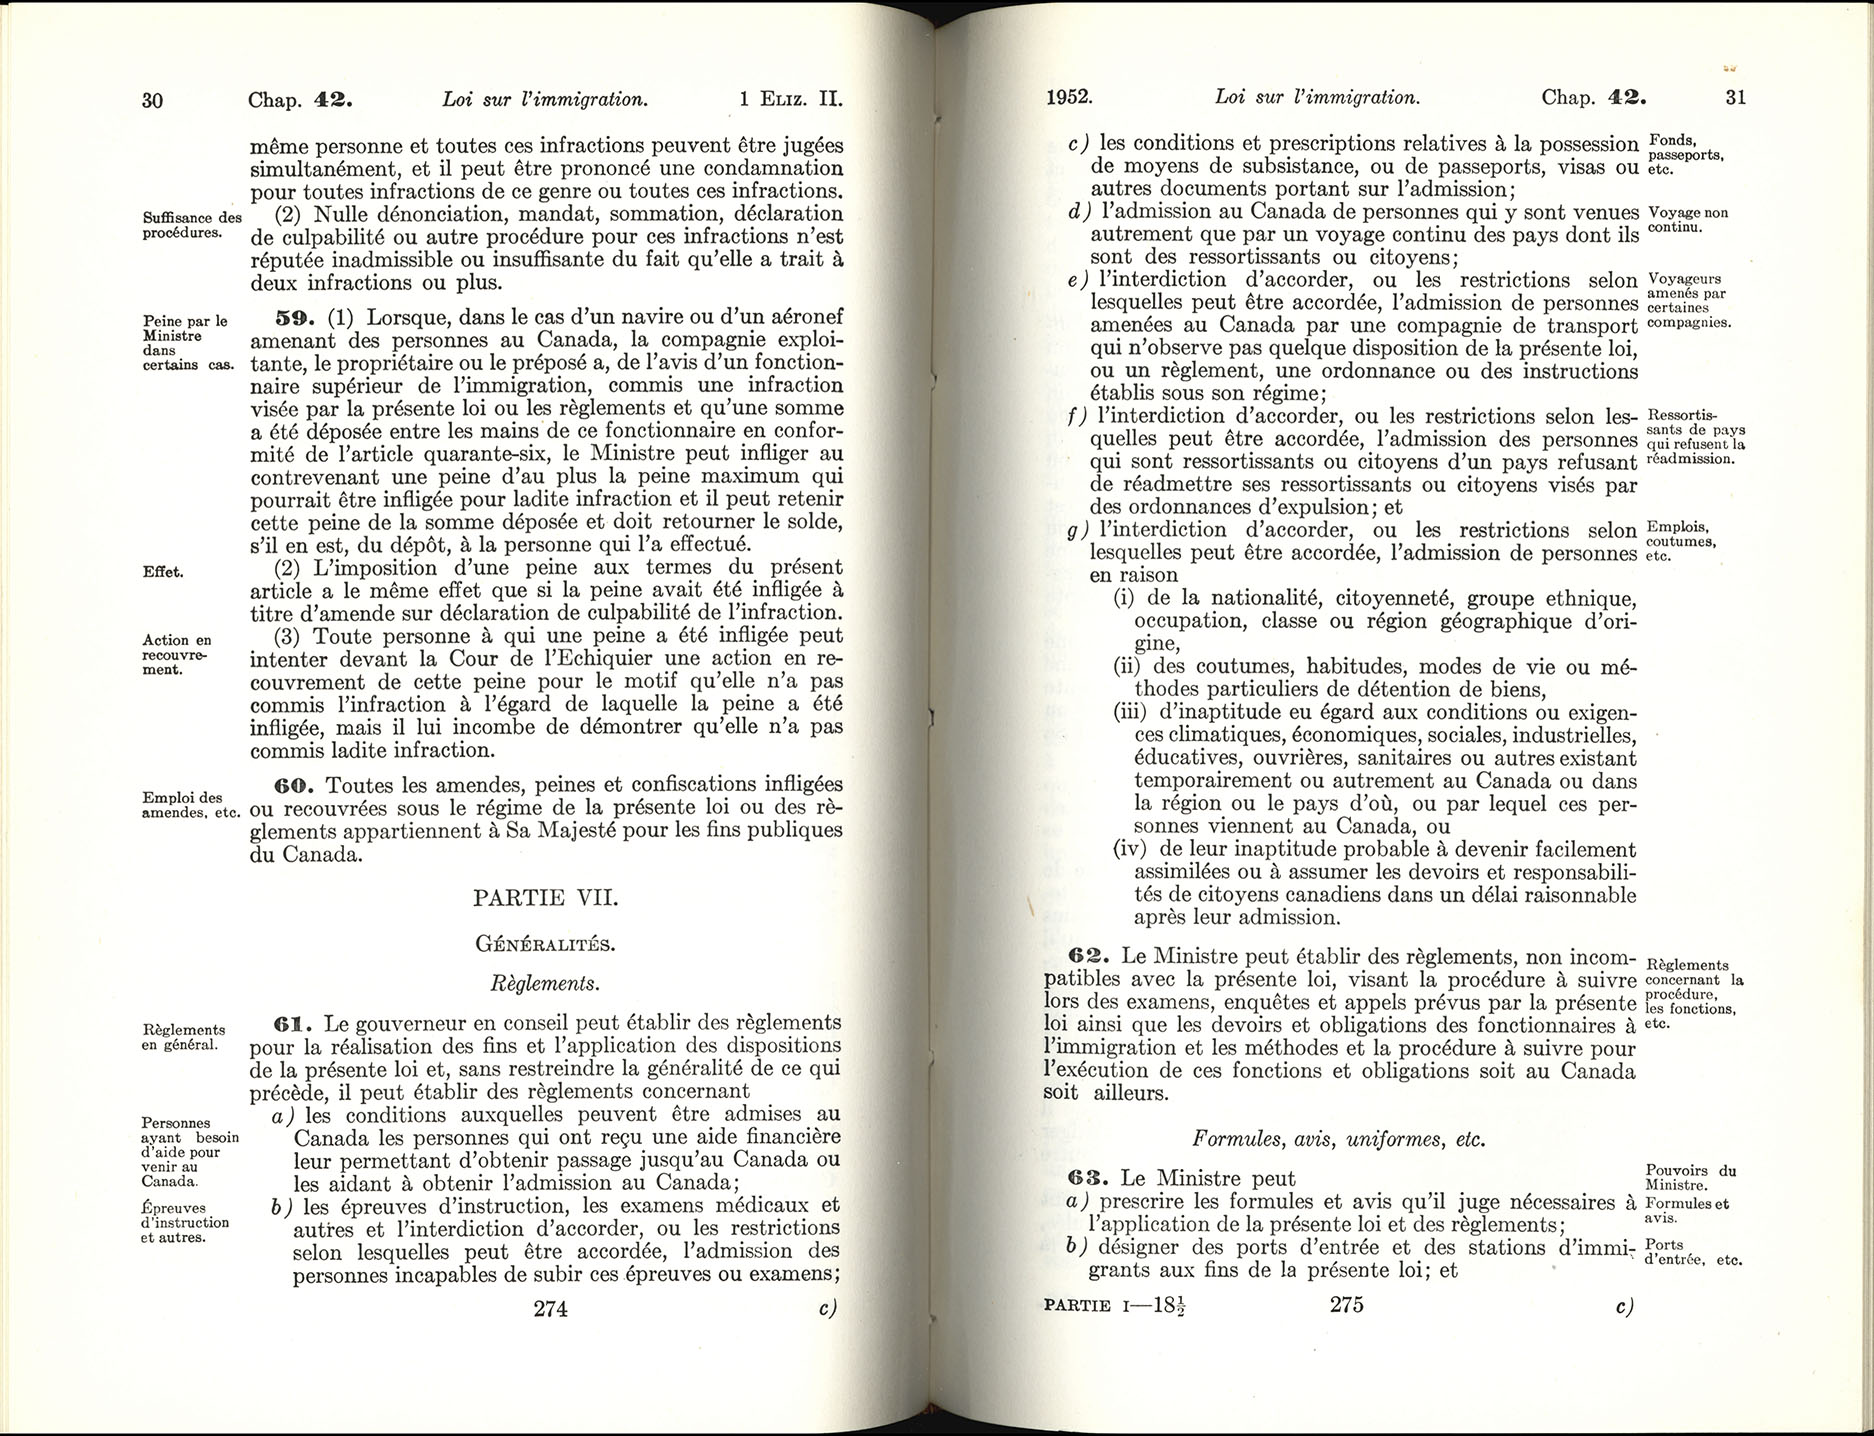 Chap 42 Page 274, 275 Loi sur l’immigration, 1952